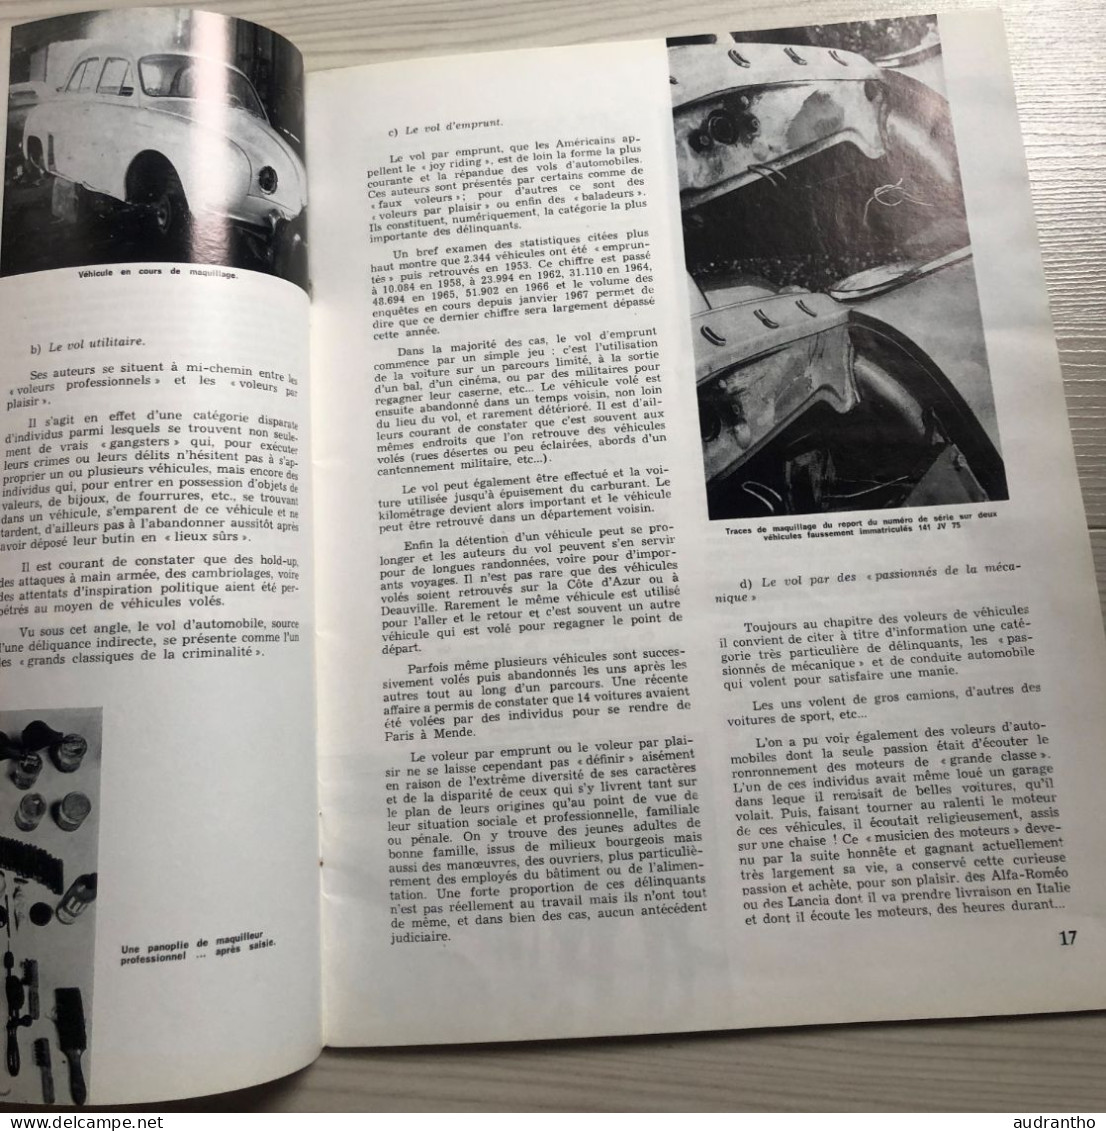 Rare revue sur la Police Nationale No 71 mars 1968